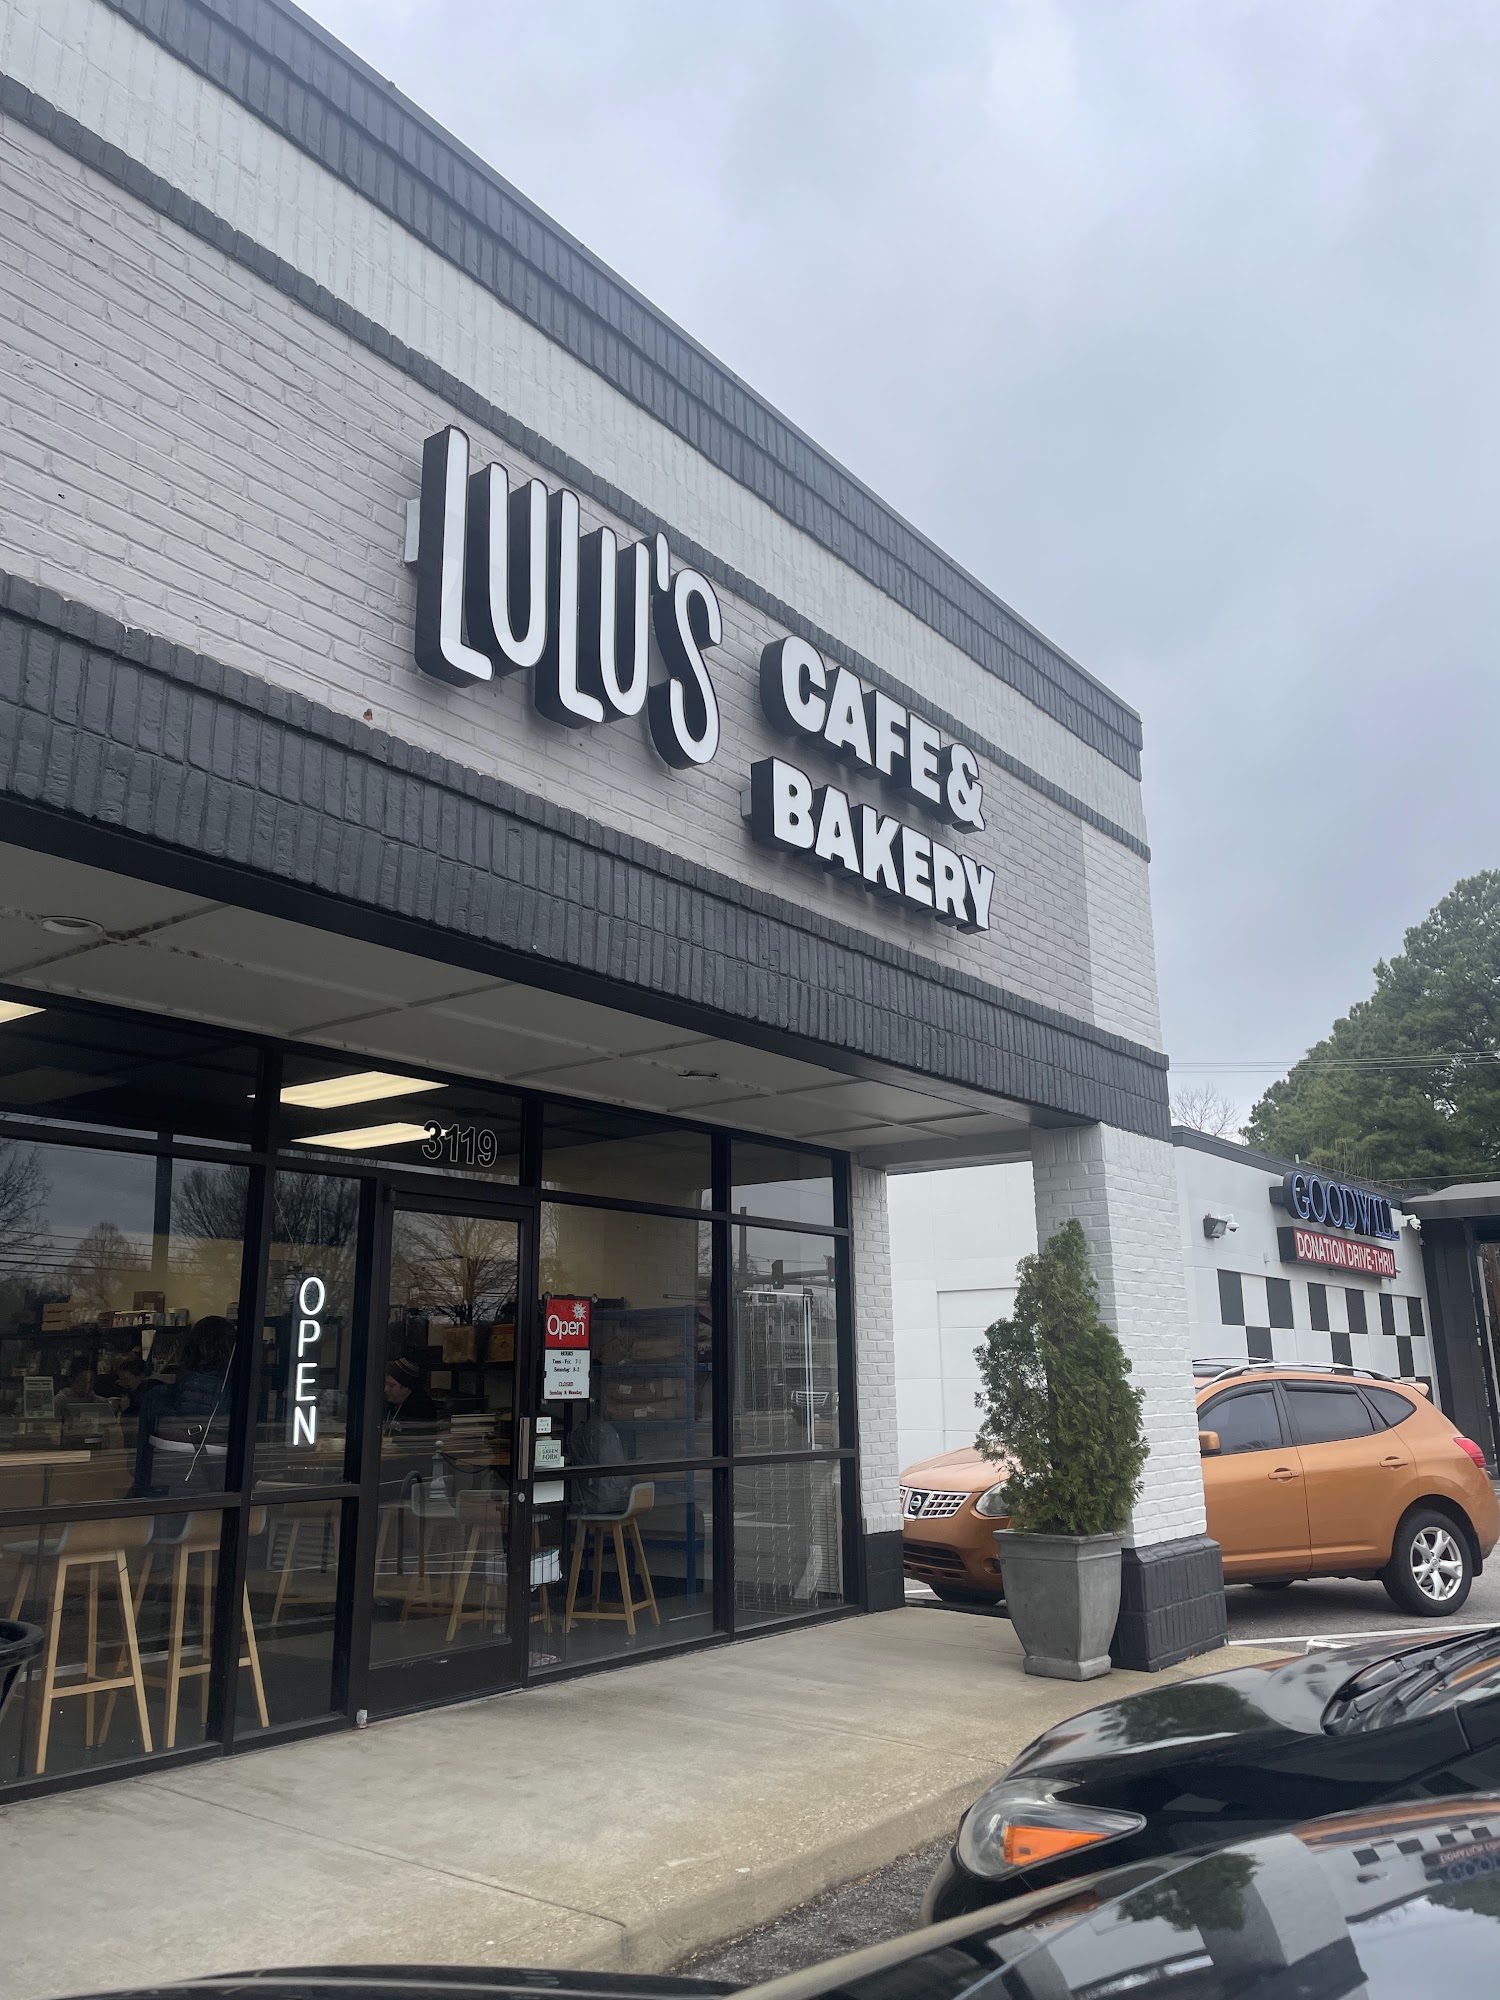 LuLu's Cafe & Bakery